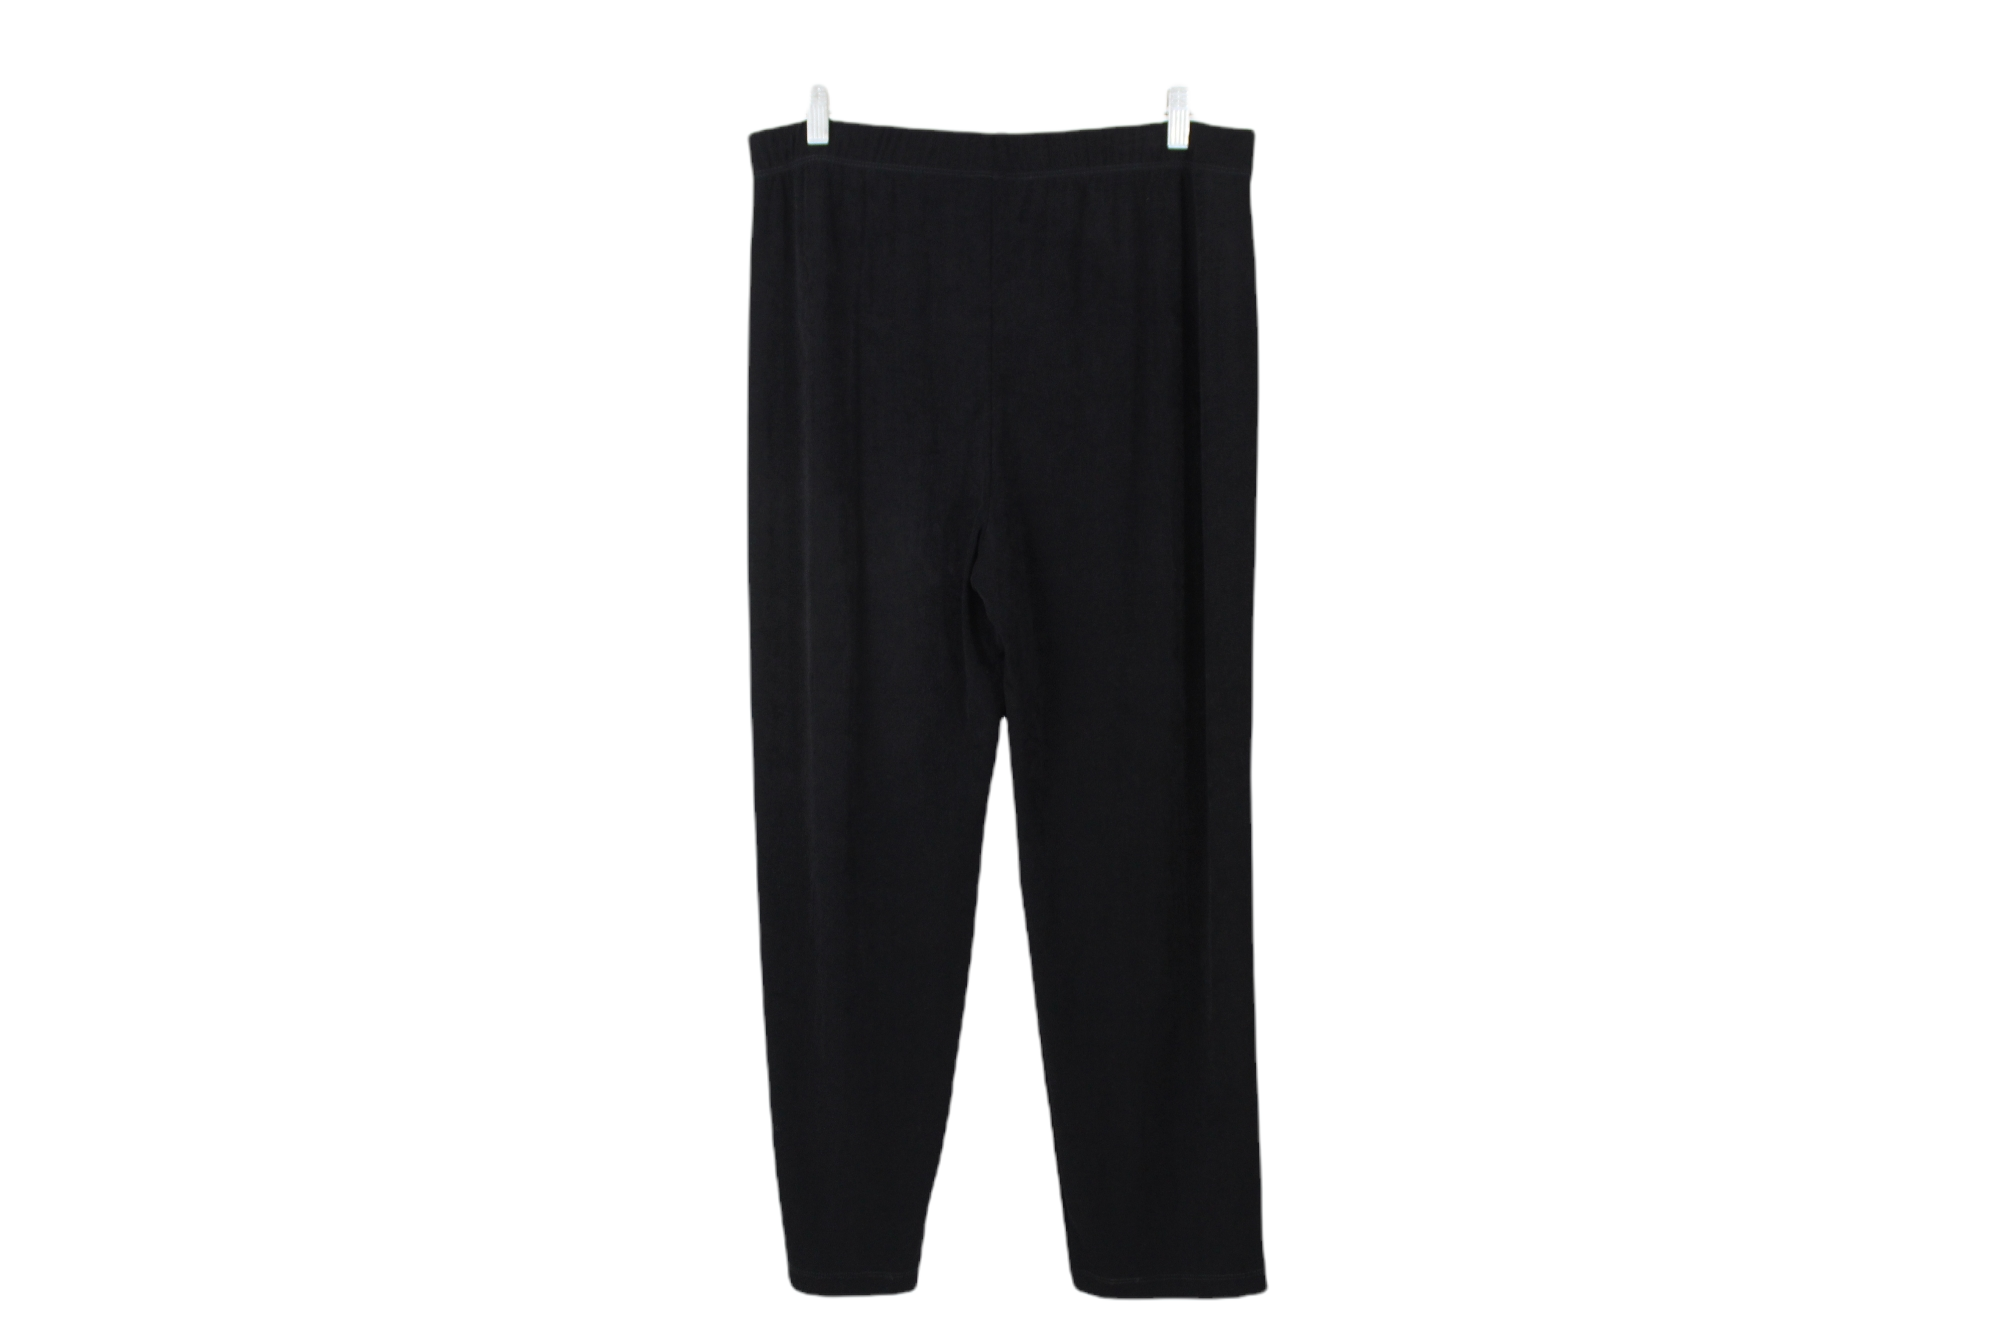 NEW Chico's Essential Slim Black Pant | 2 Short (L/12)